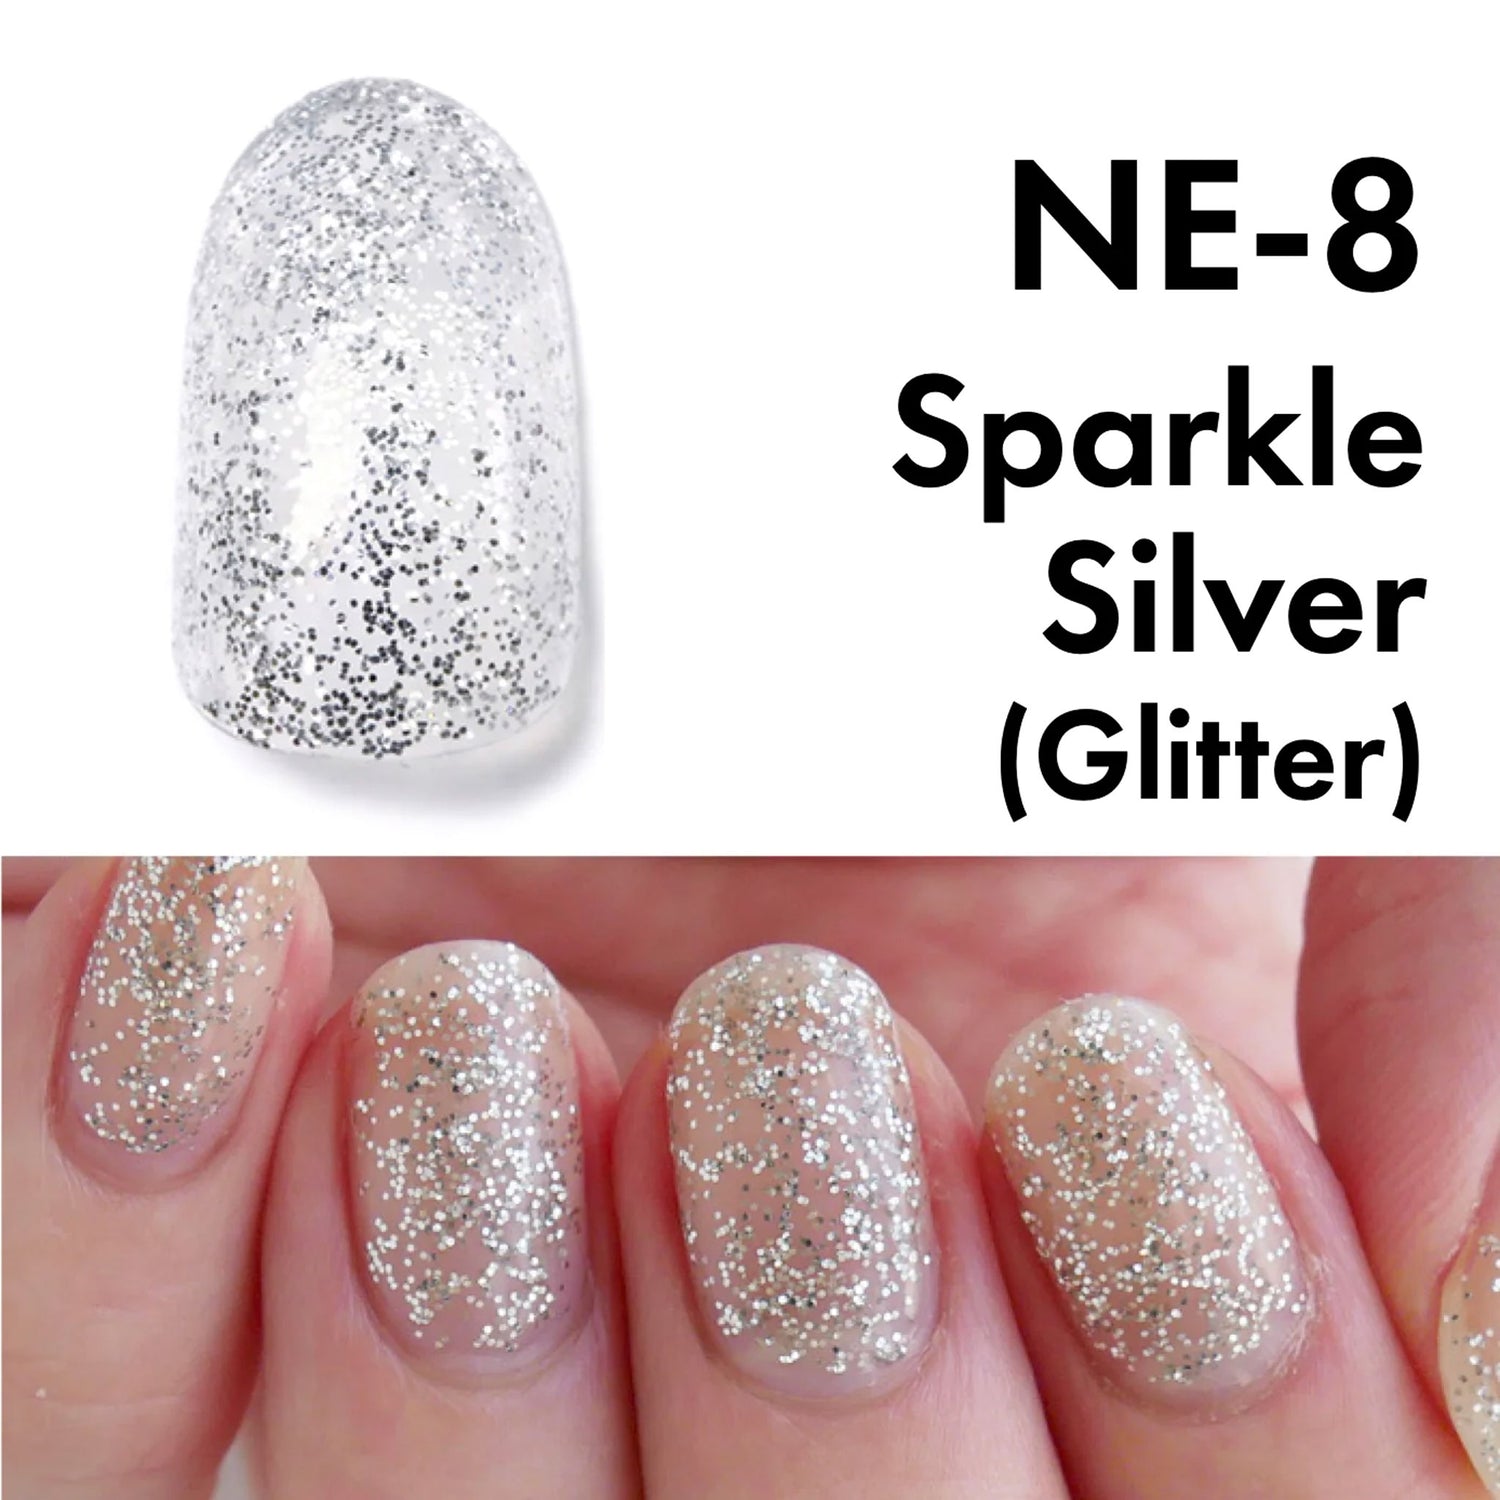 HOMEI weekly gel Sparkle Silver NE-8